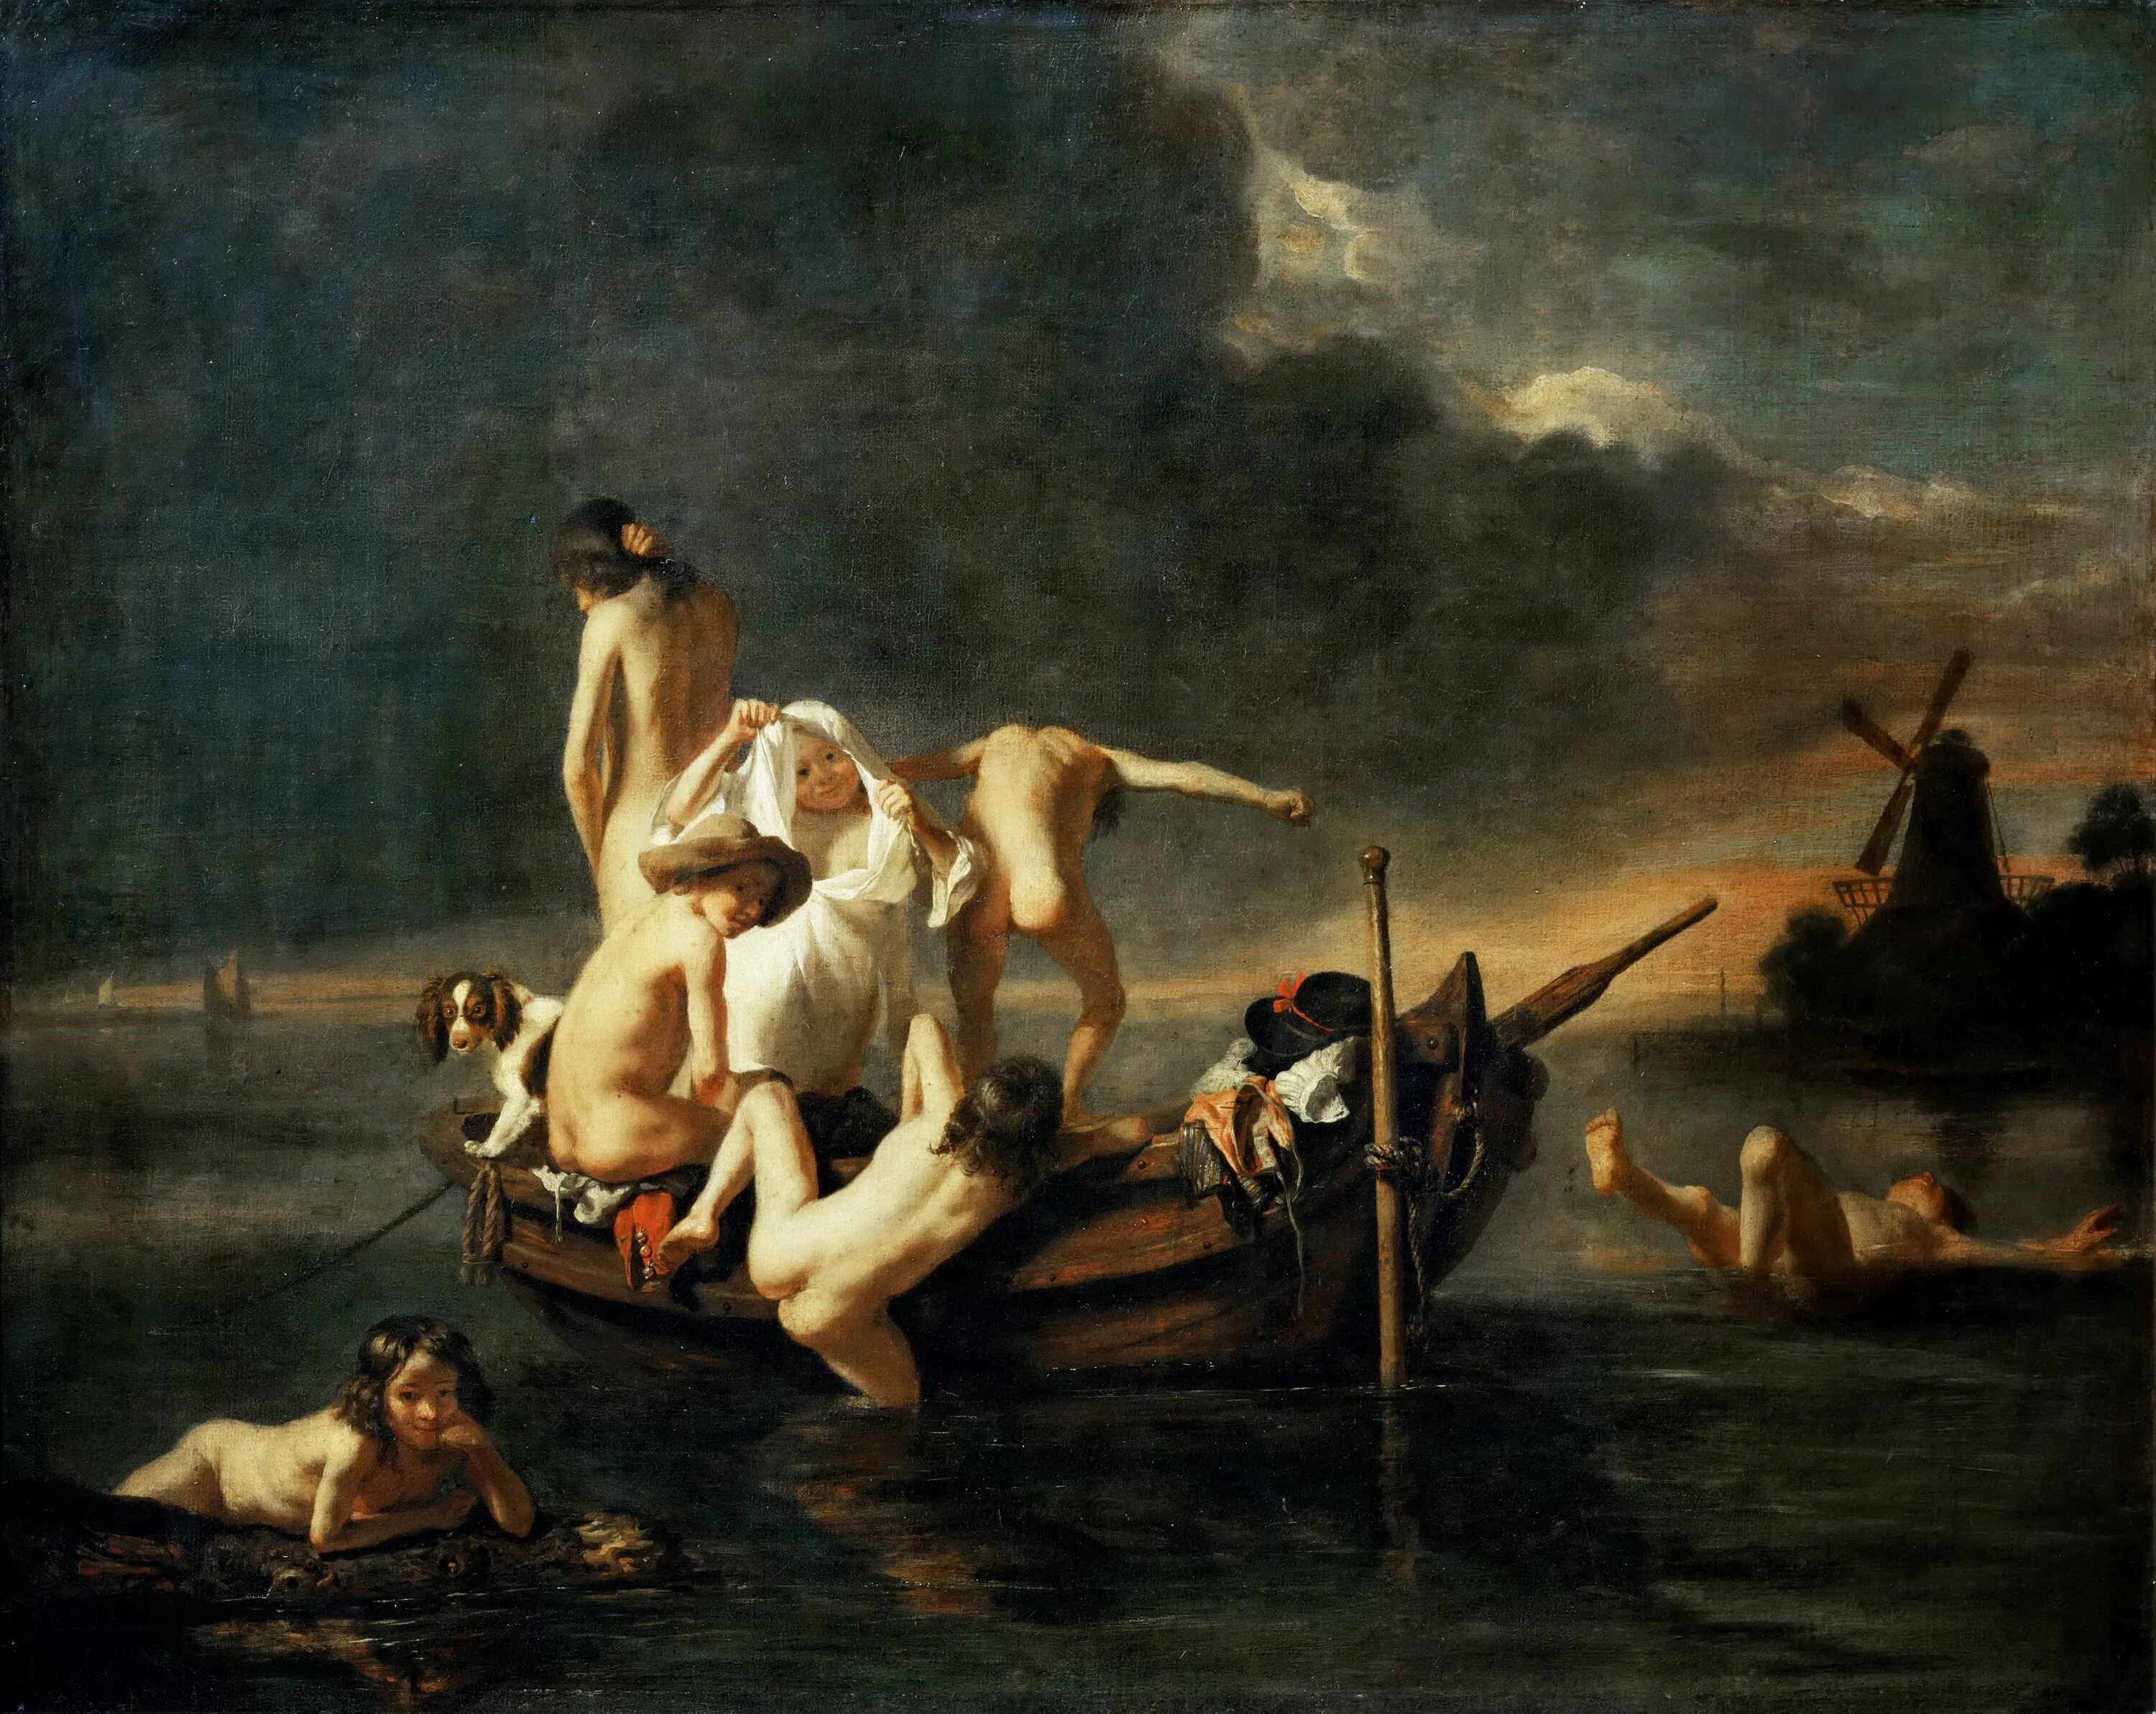 Купающиеся картины. Николас мас (1634 - 1693) картины. Николас Маес картины. Сера купальщики в Аньере картина.